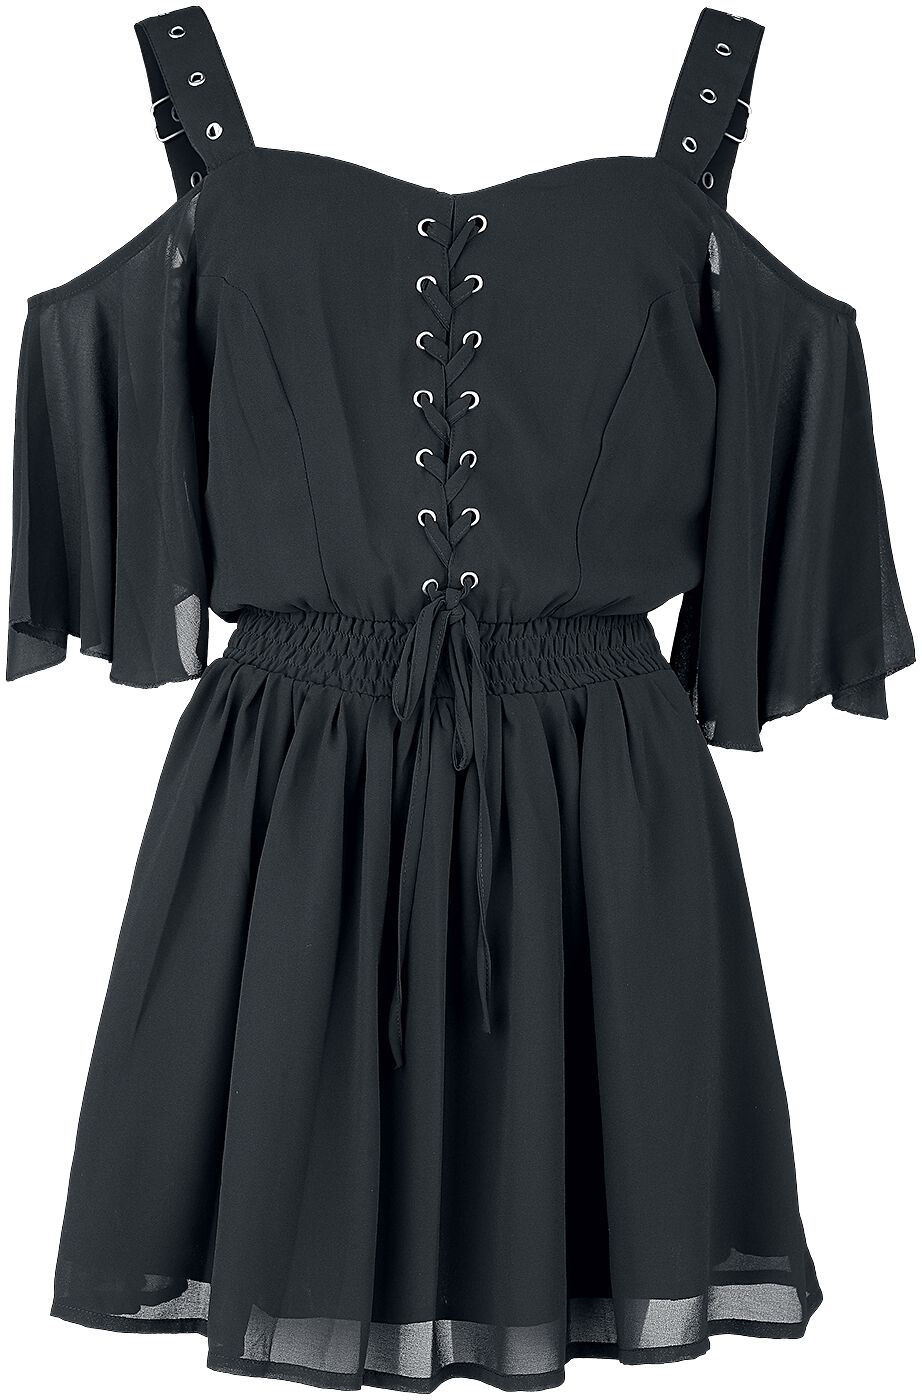 Poizen Industries - Gothic Kurzes Kleid - Catastrophe Dress - XS bis 4XL - für Damen - Größe XS - schwarz von Poizen Industries